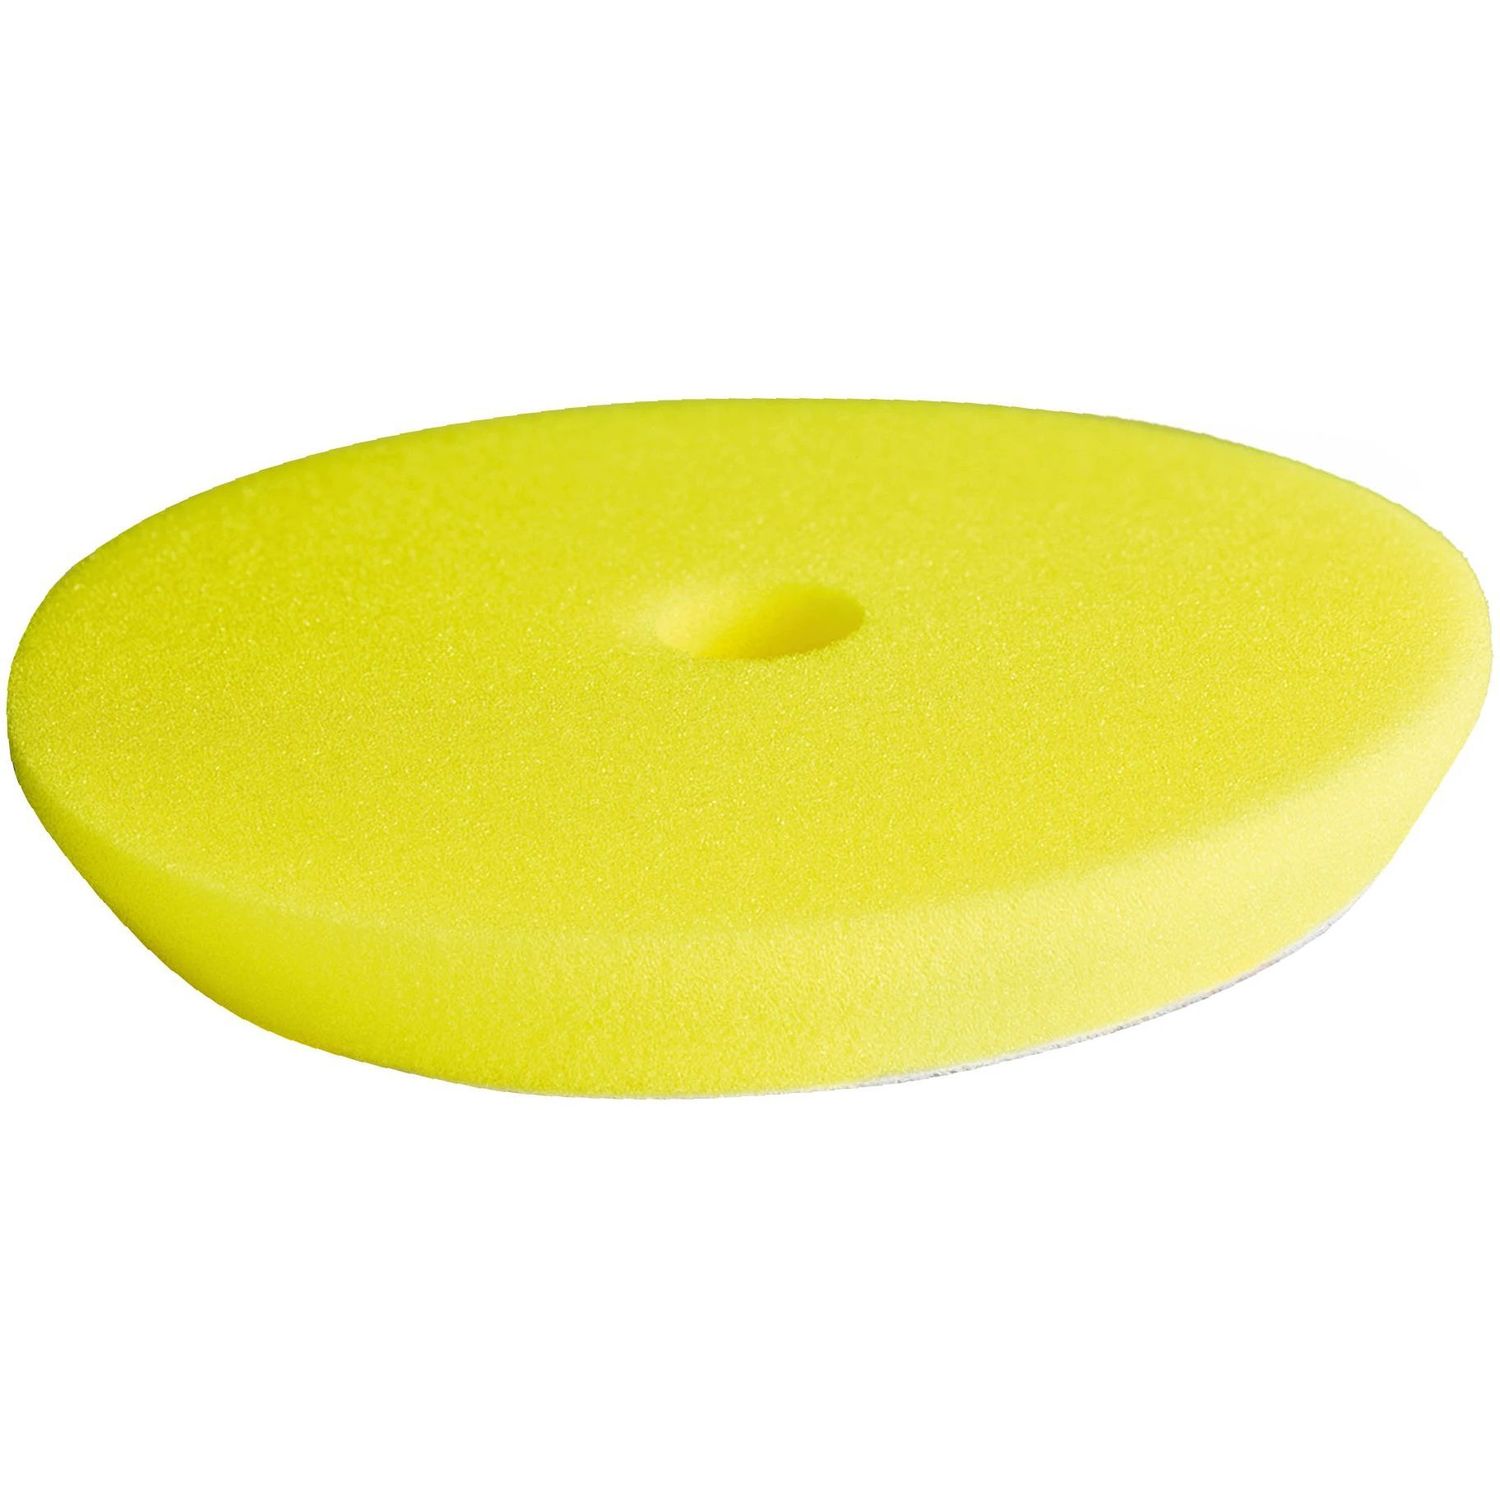 Полировочный круг Sonax ProfiLine, средней жесткости, желтый, 143 мм - фото 1